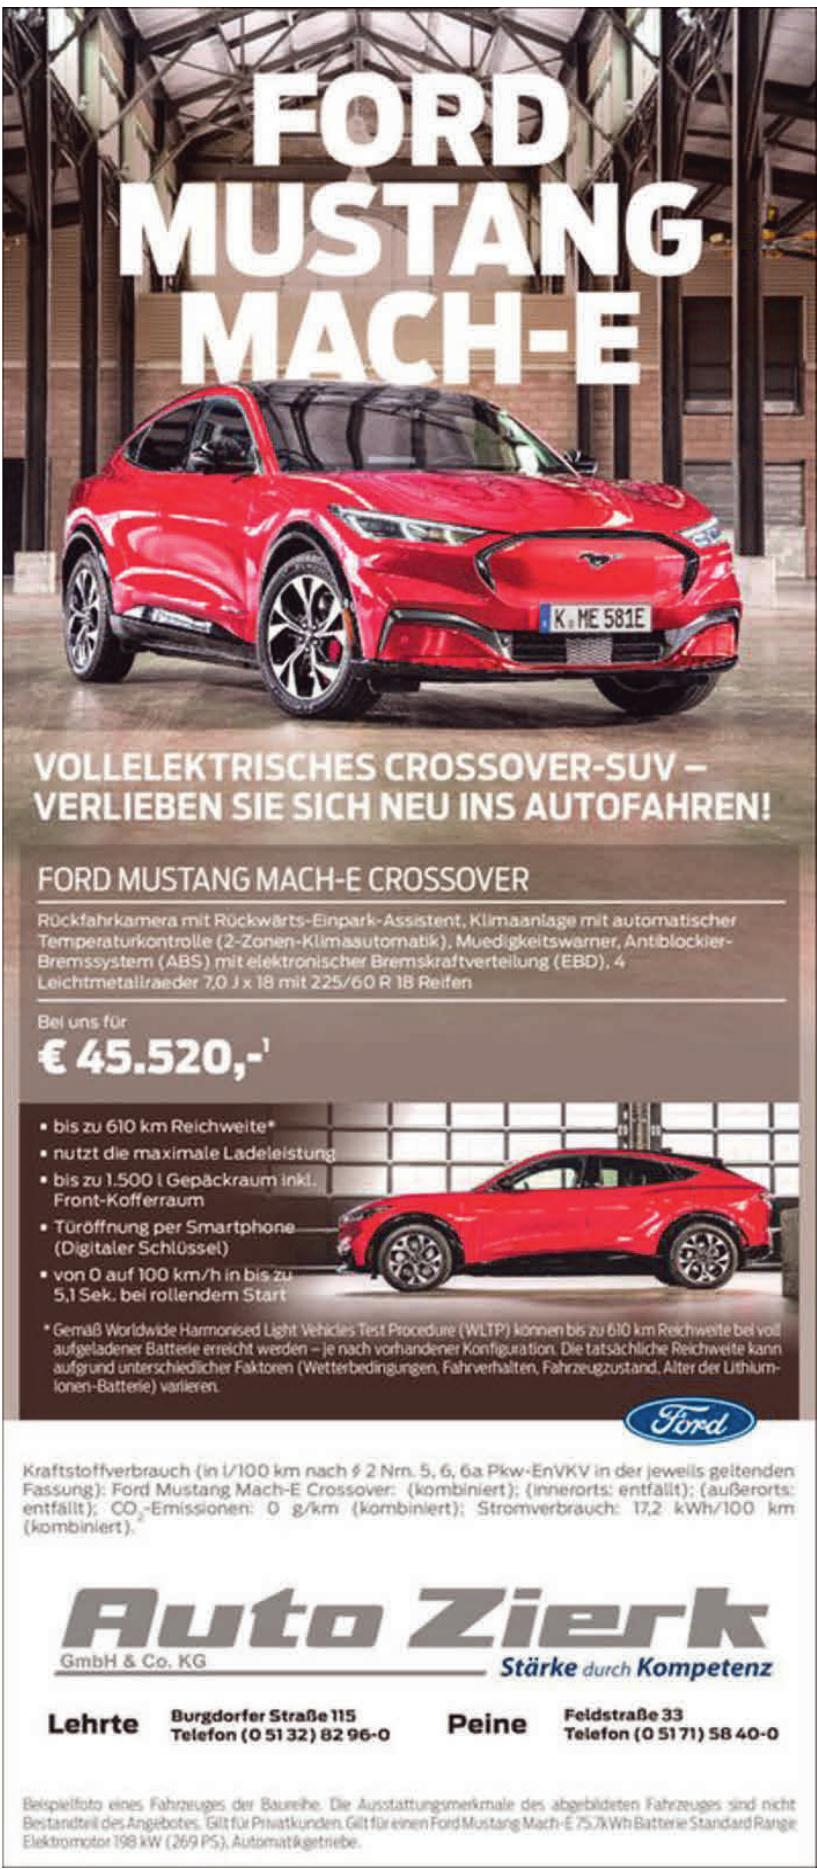 Auto Zierk GmbH & Co.KG